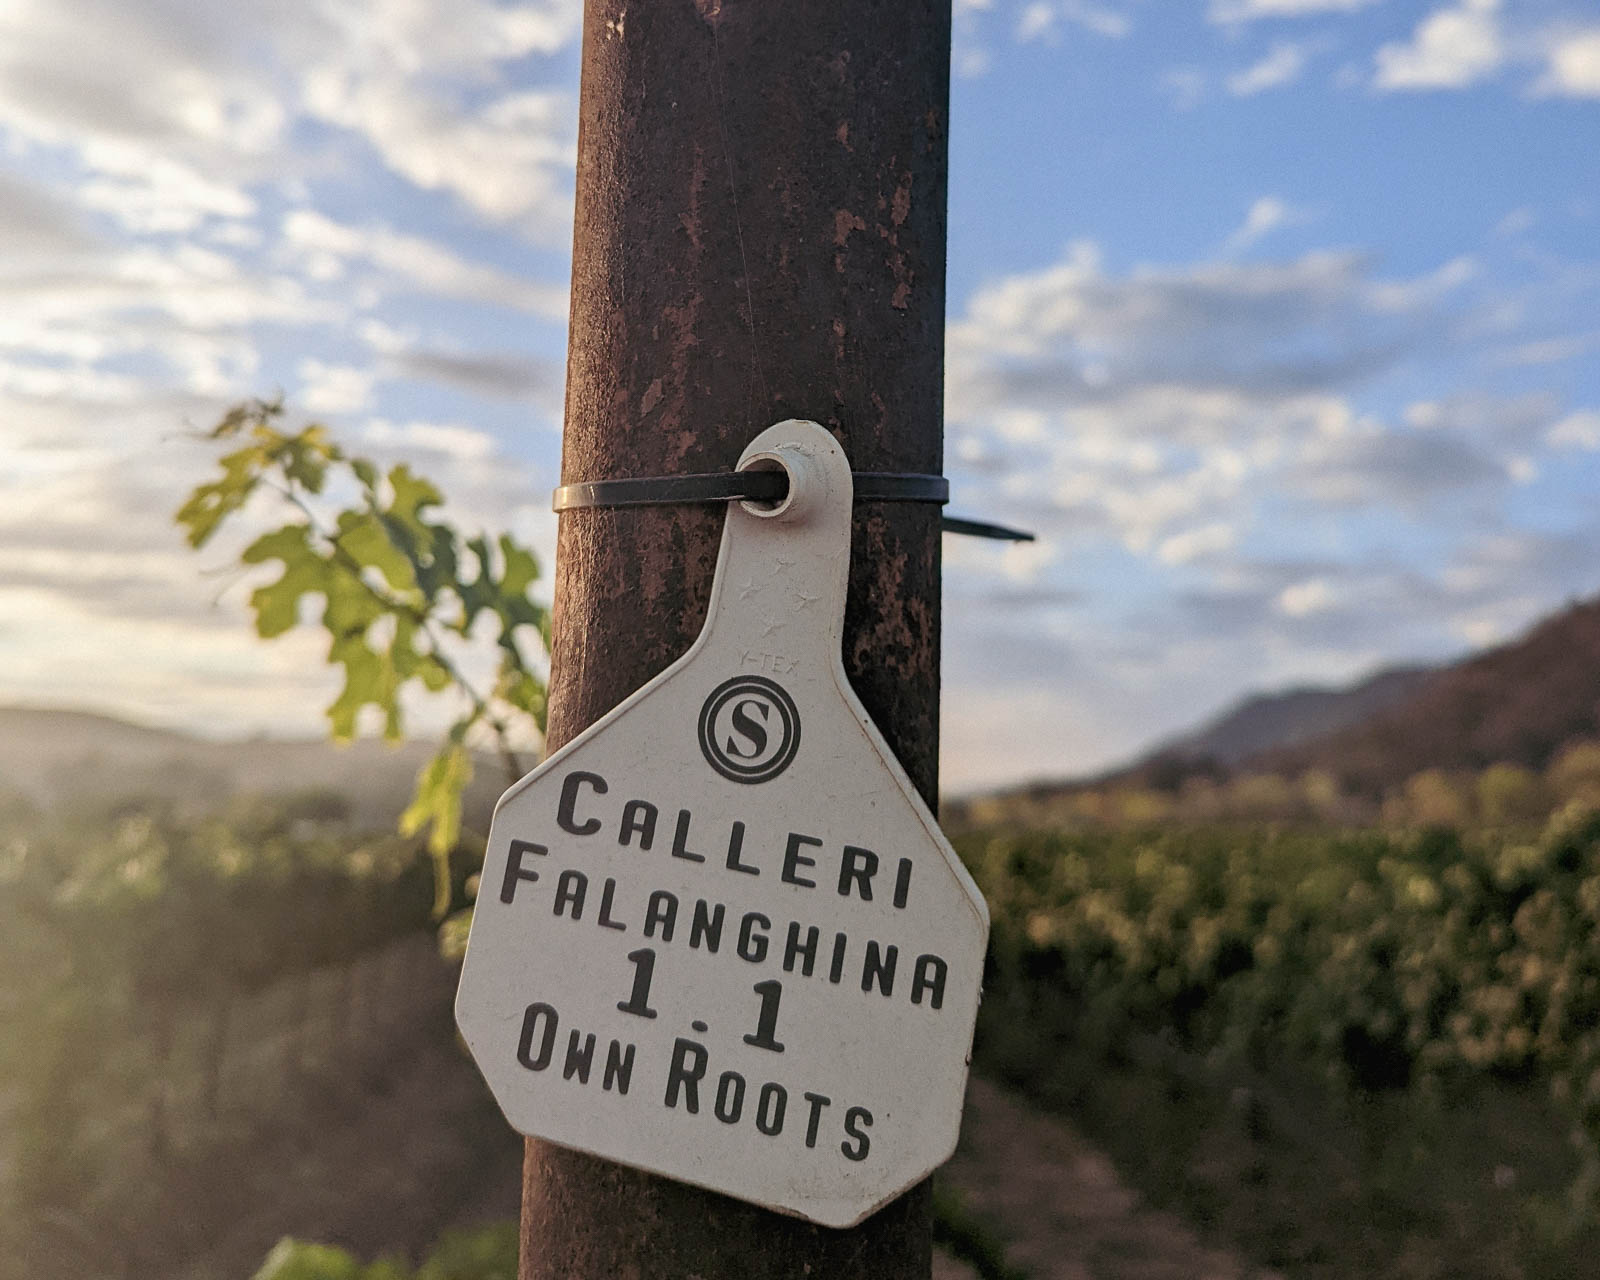 calleri vineyard tag on post 